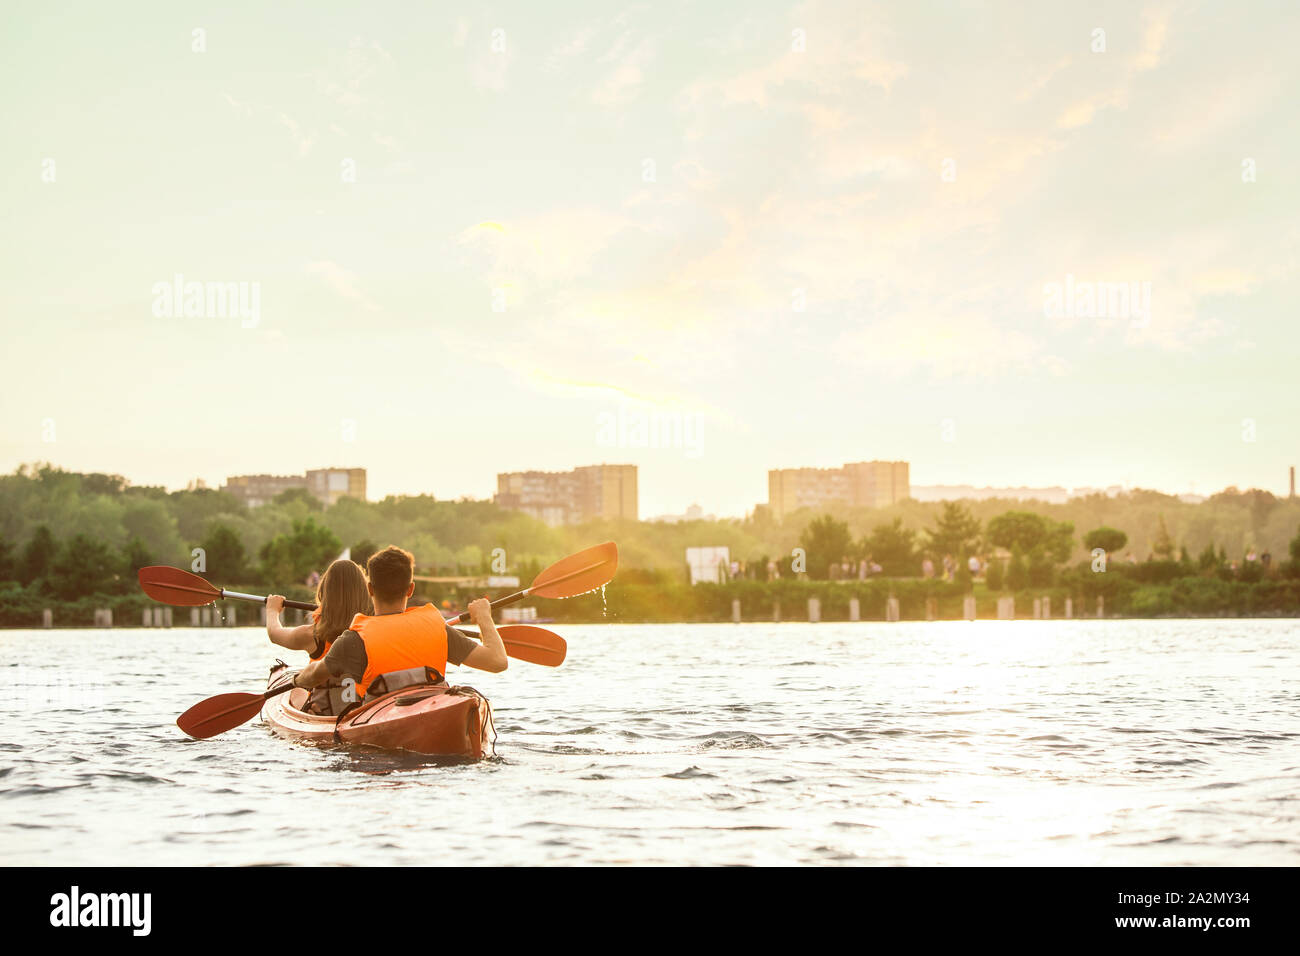 Glückliche Junge kaukasier Paar Kajakfahren auf dem Fluss mit Sonnenuntergang im Hintergrund. Spaß in der Freizeit. Gerne männliche und weibliche Modell laughting auf dem Kajak. Sport, Beziehungen Konzept. Farbenfroh. Stockfoto